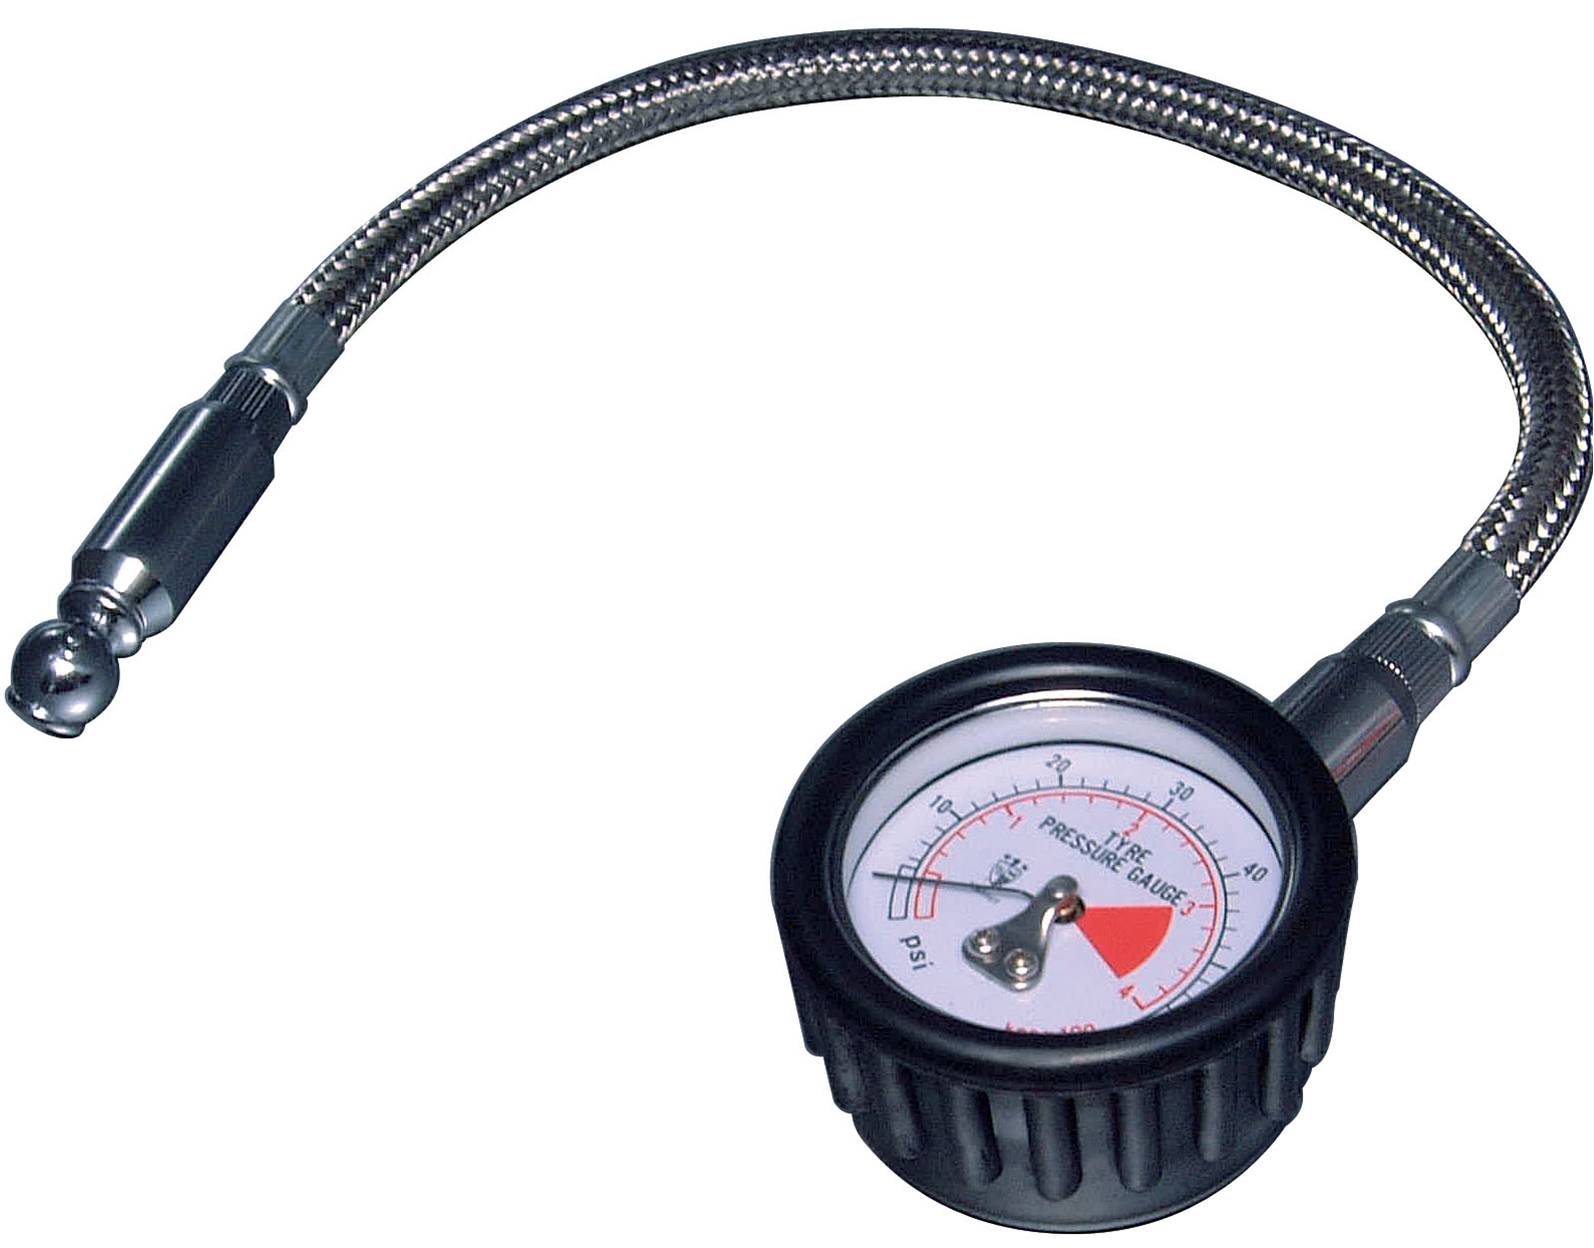 Acessar a peça Medidor de pressão de pneu profissional